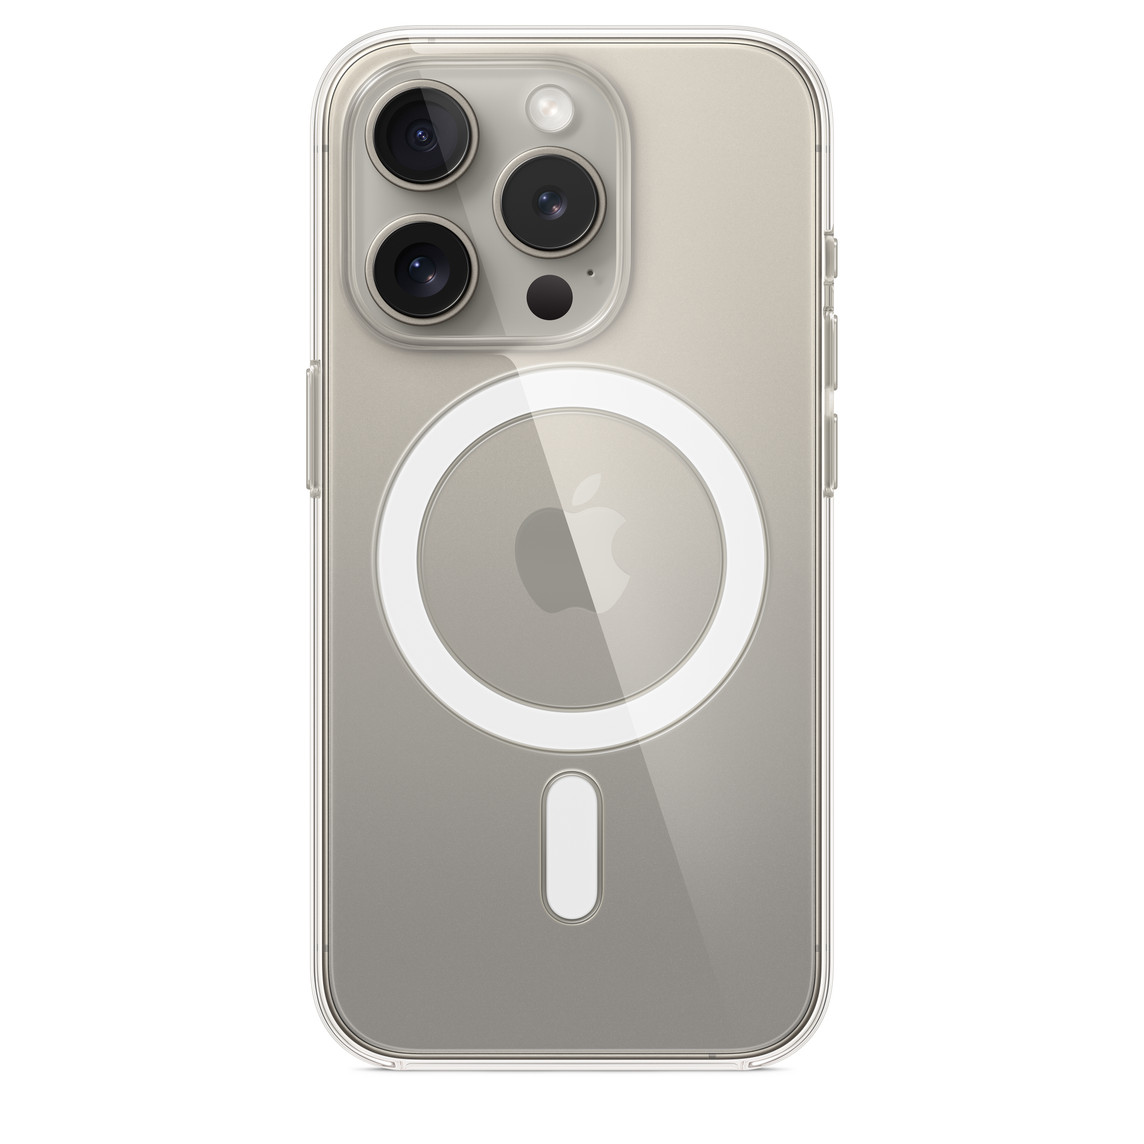 Carcasa transparente con MagSafe para el iPhone 15 Pro, acoplada al iPhone 15 Pro con acabado titanio natural.